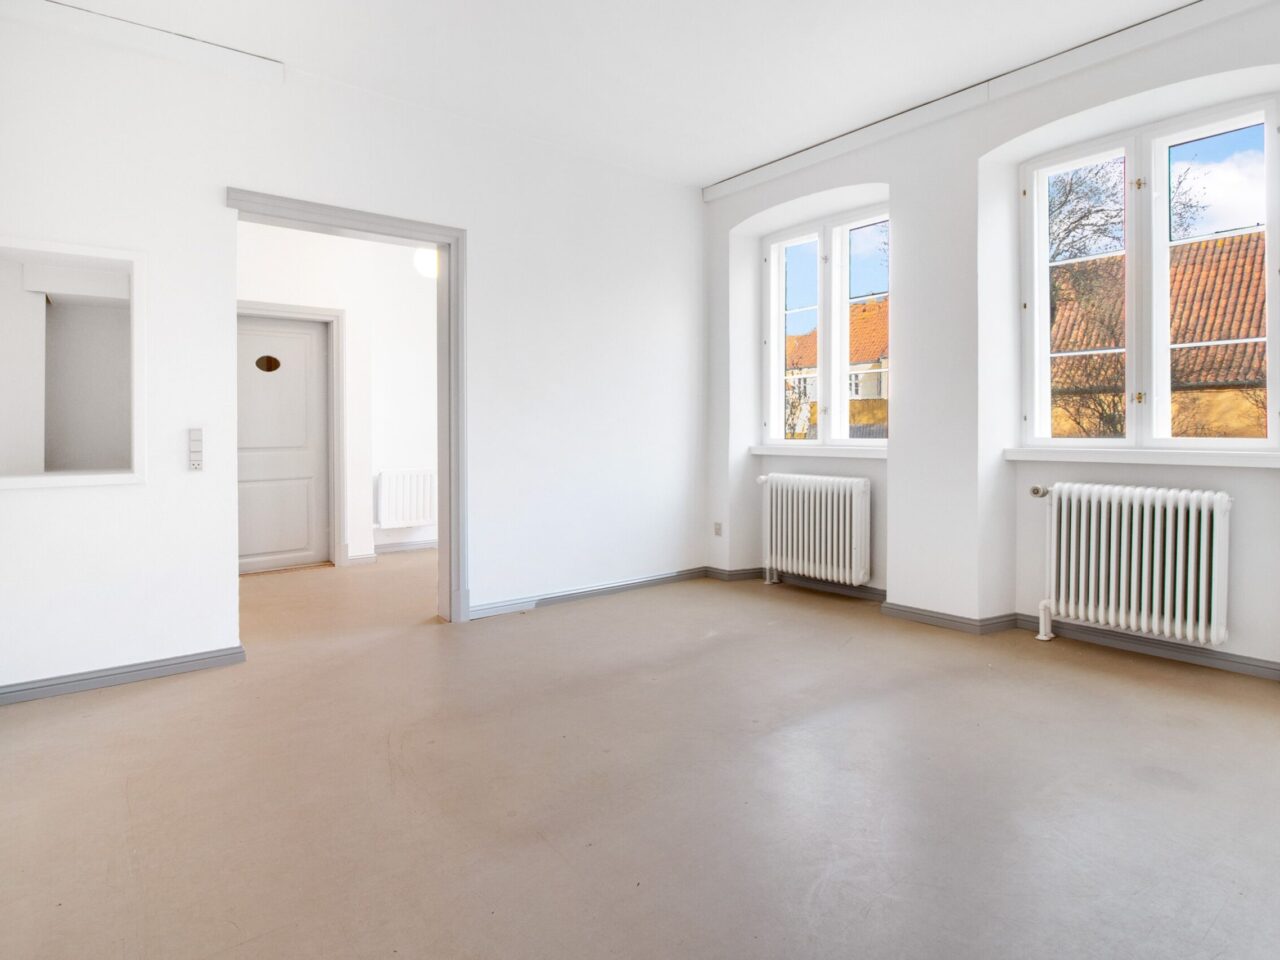 Lokaler til Leje i Christiansfeld - Hvid rum med trægulve og to vinduer